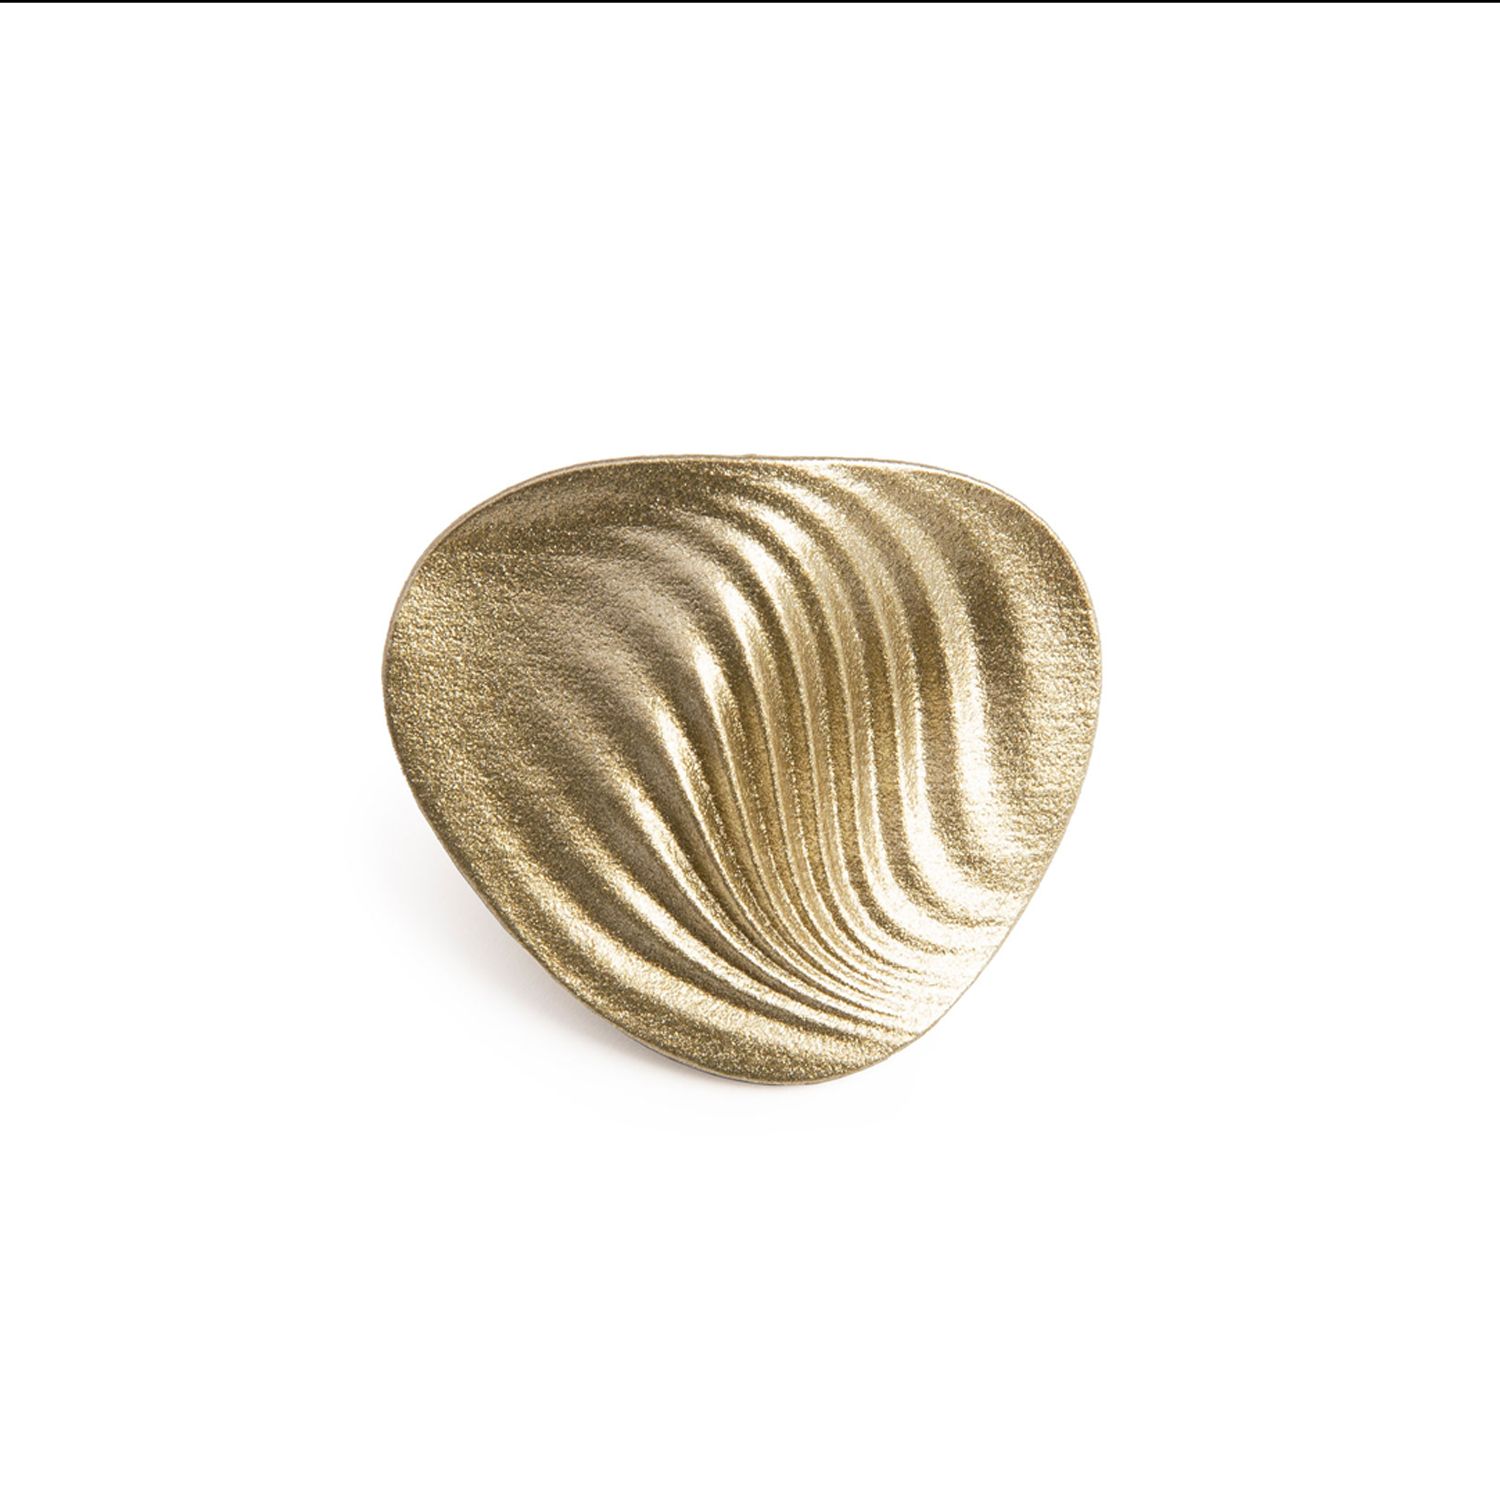 Maison 203: Minke Ring White Gold Product Image 1 of 1